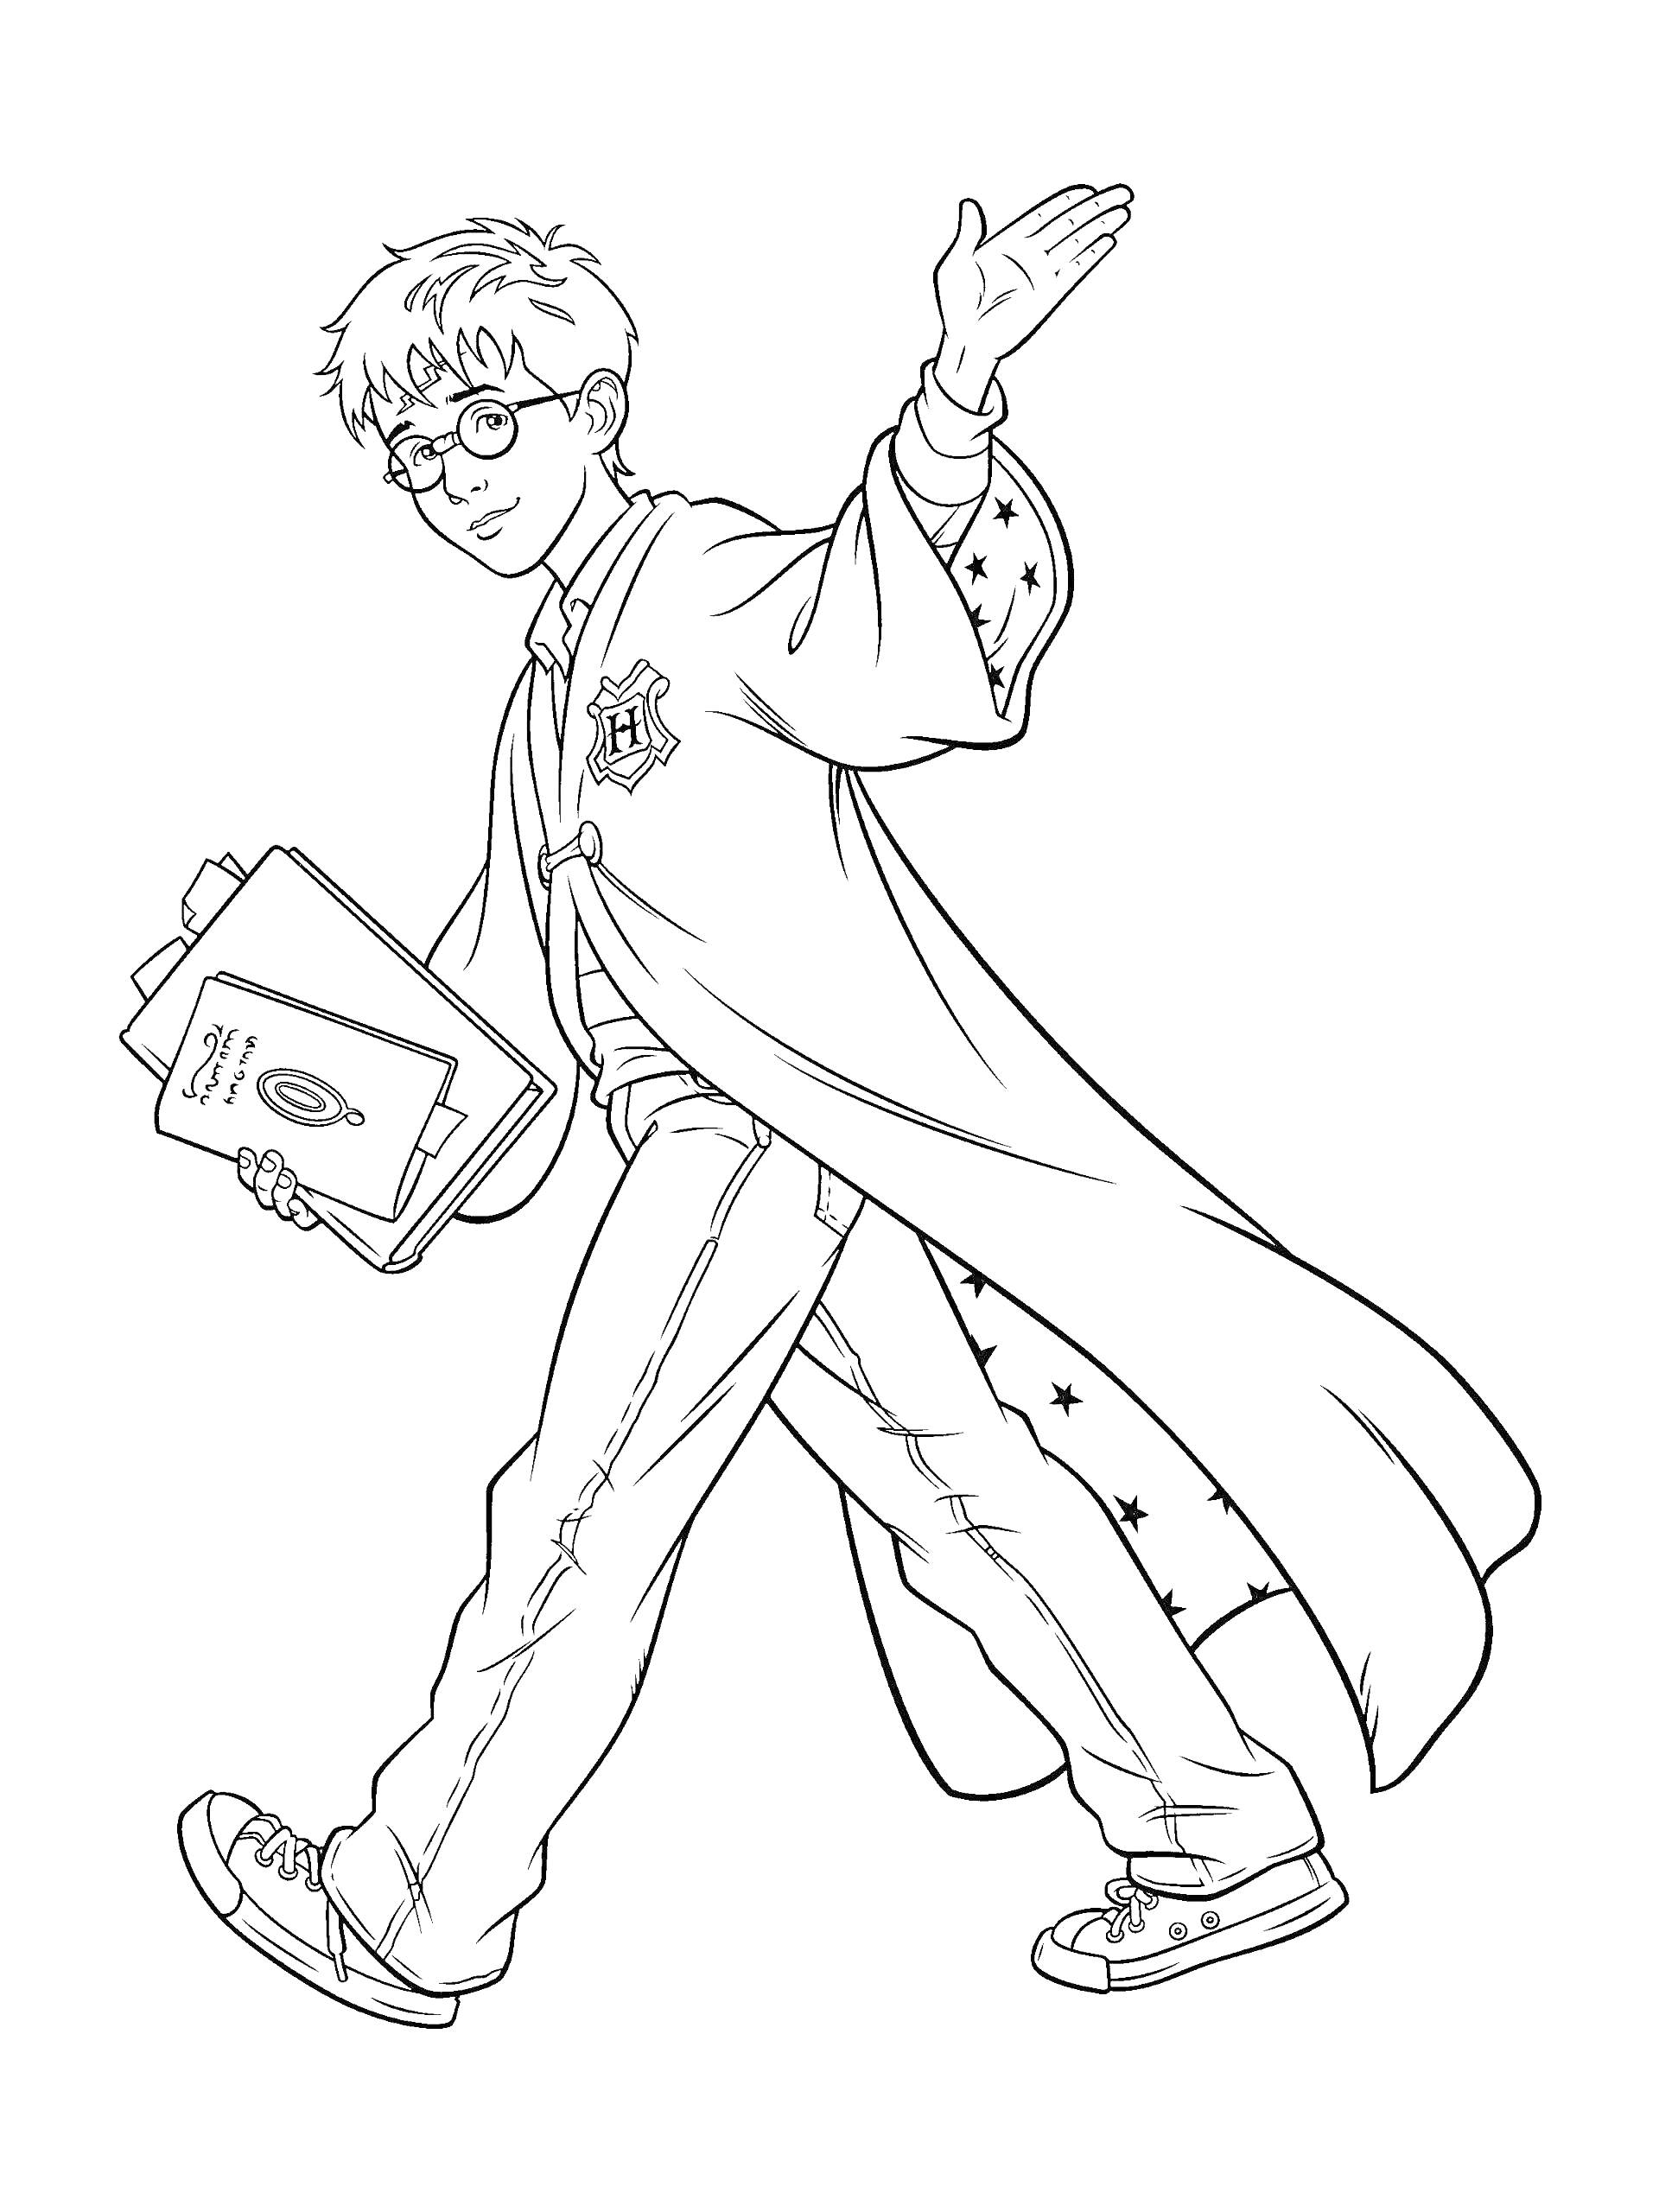 Гарри Поттер с учебником, одет в мантию, очки на лице